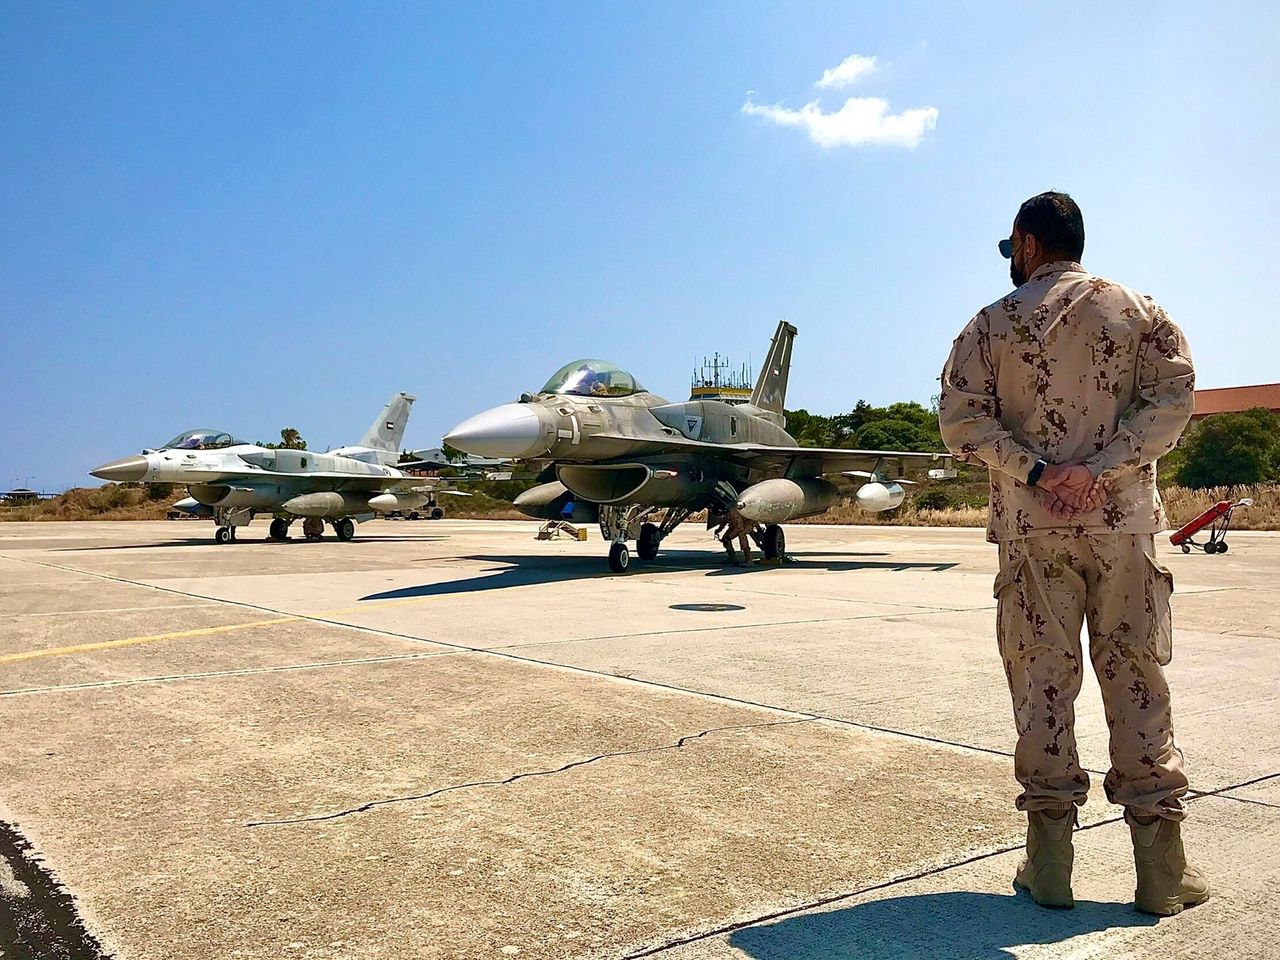 Μαχητικό των ΗΑΕ στη Σούδα στο πλαίσιο κοινής άσκησης με την ελληνική Πολεμική Αεροπορία. 27 Αυγούστου 2020. (Greek Defense Ministry via AP)